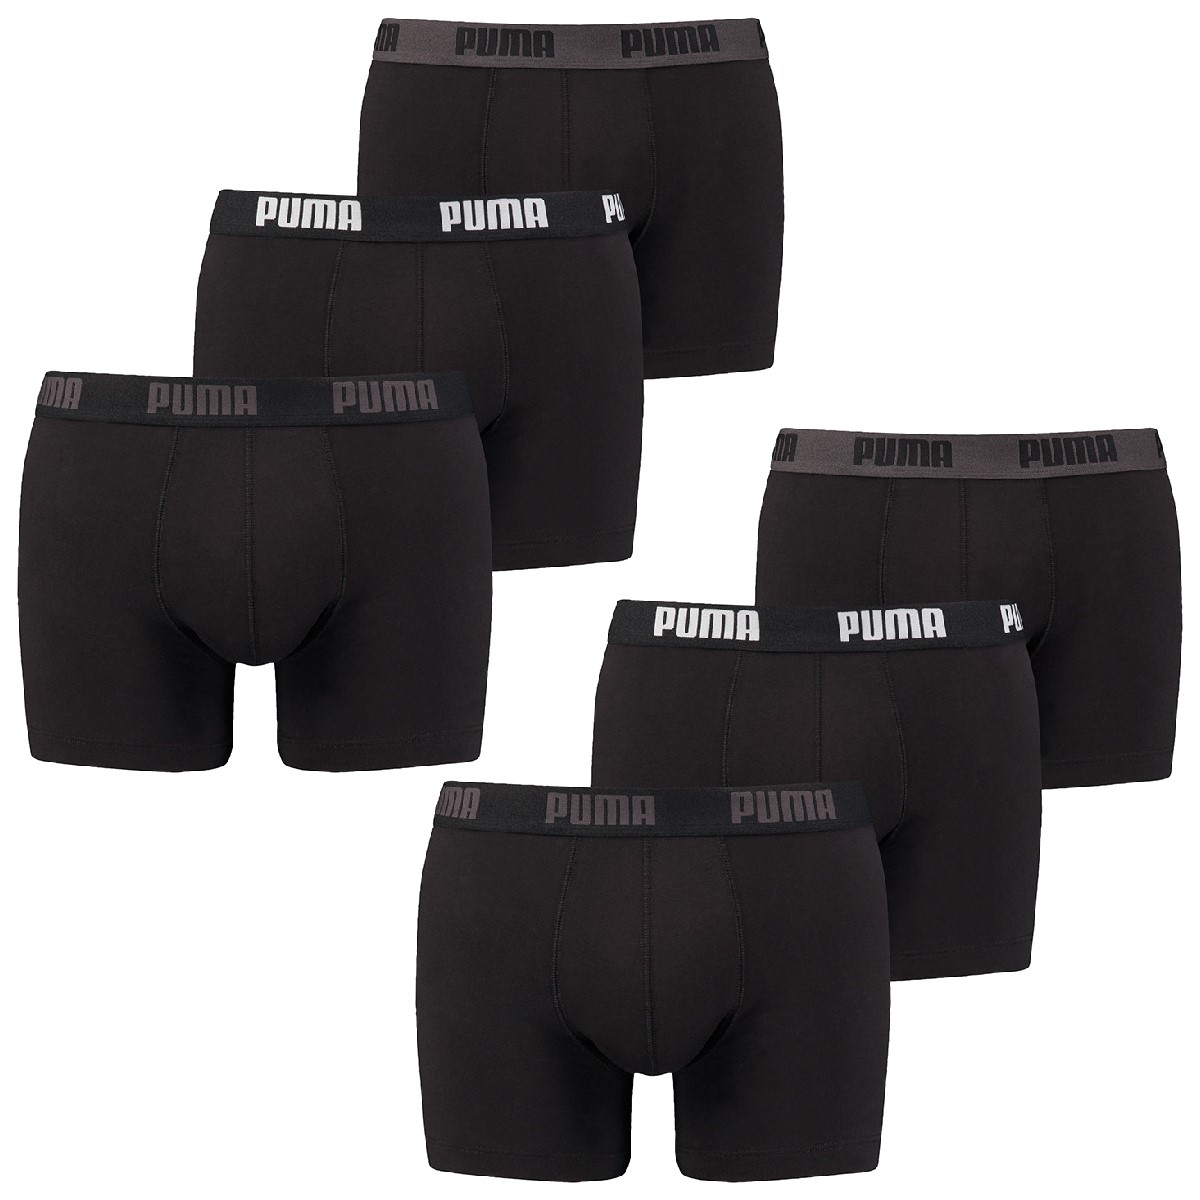 6 er Pack Puma Boxer Boxershorts Herren Unterwäsche sportliche Retro Pants